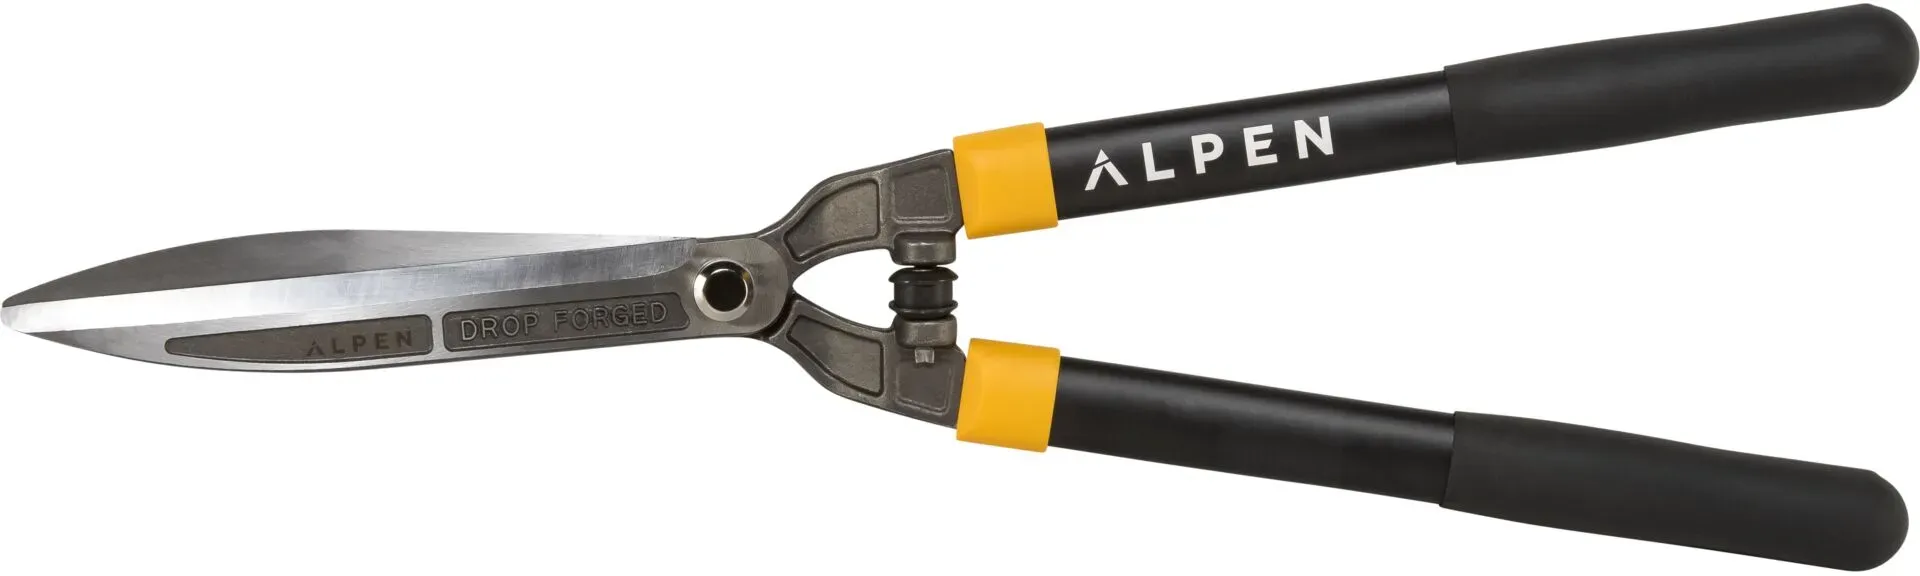 Alpen Swiss Tools Alpen PILATUS 200 Astschere